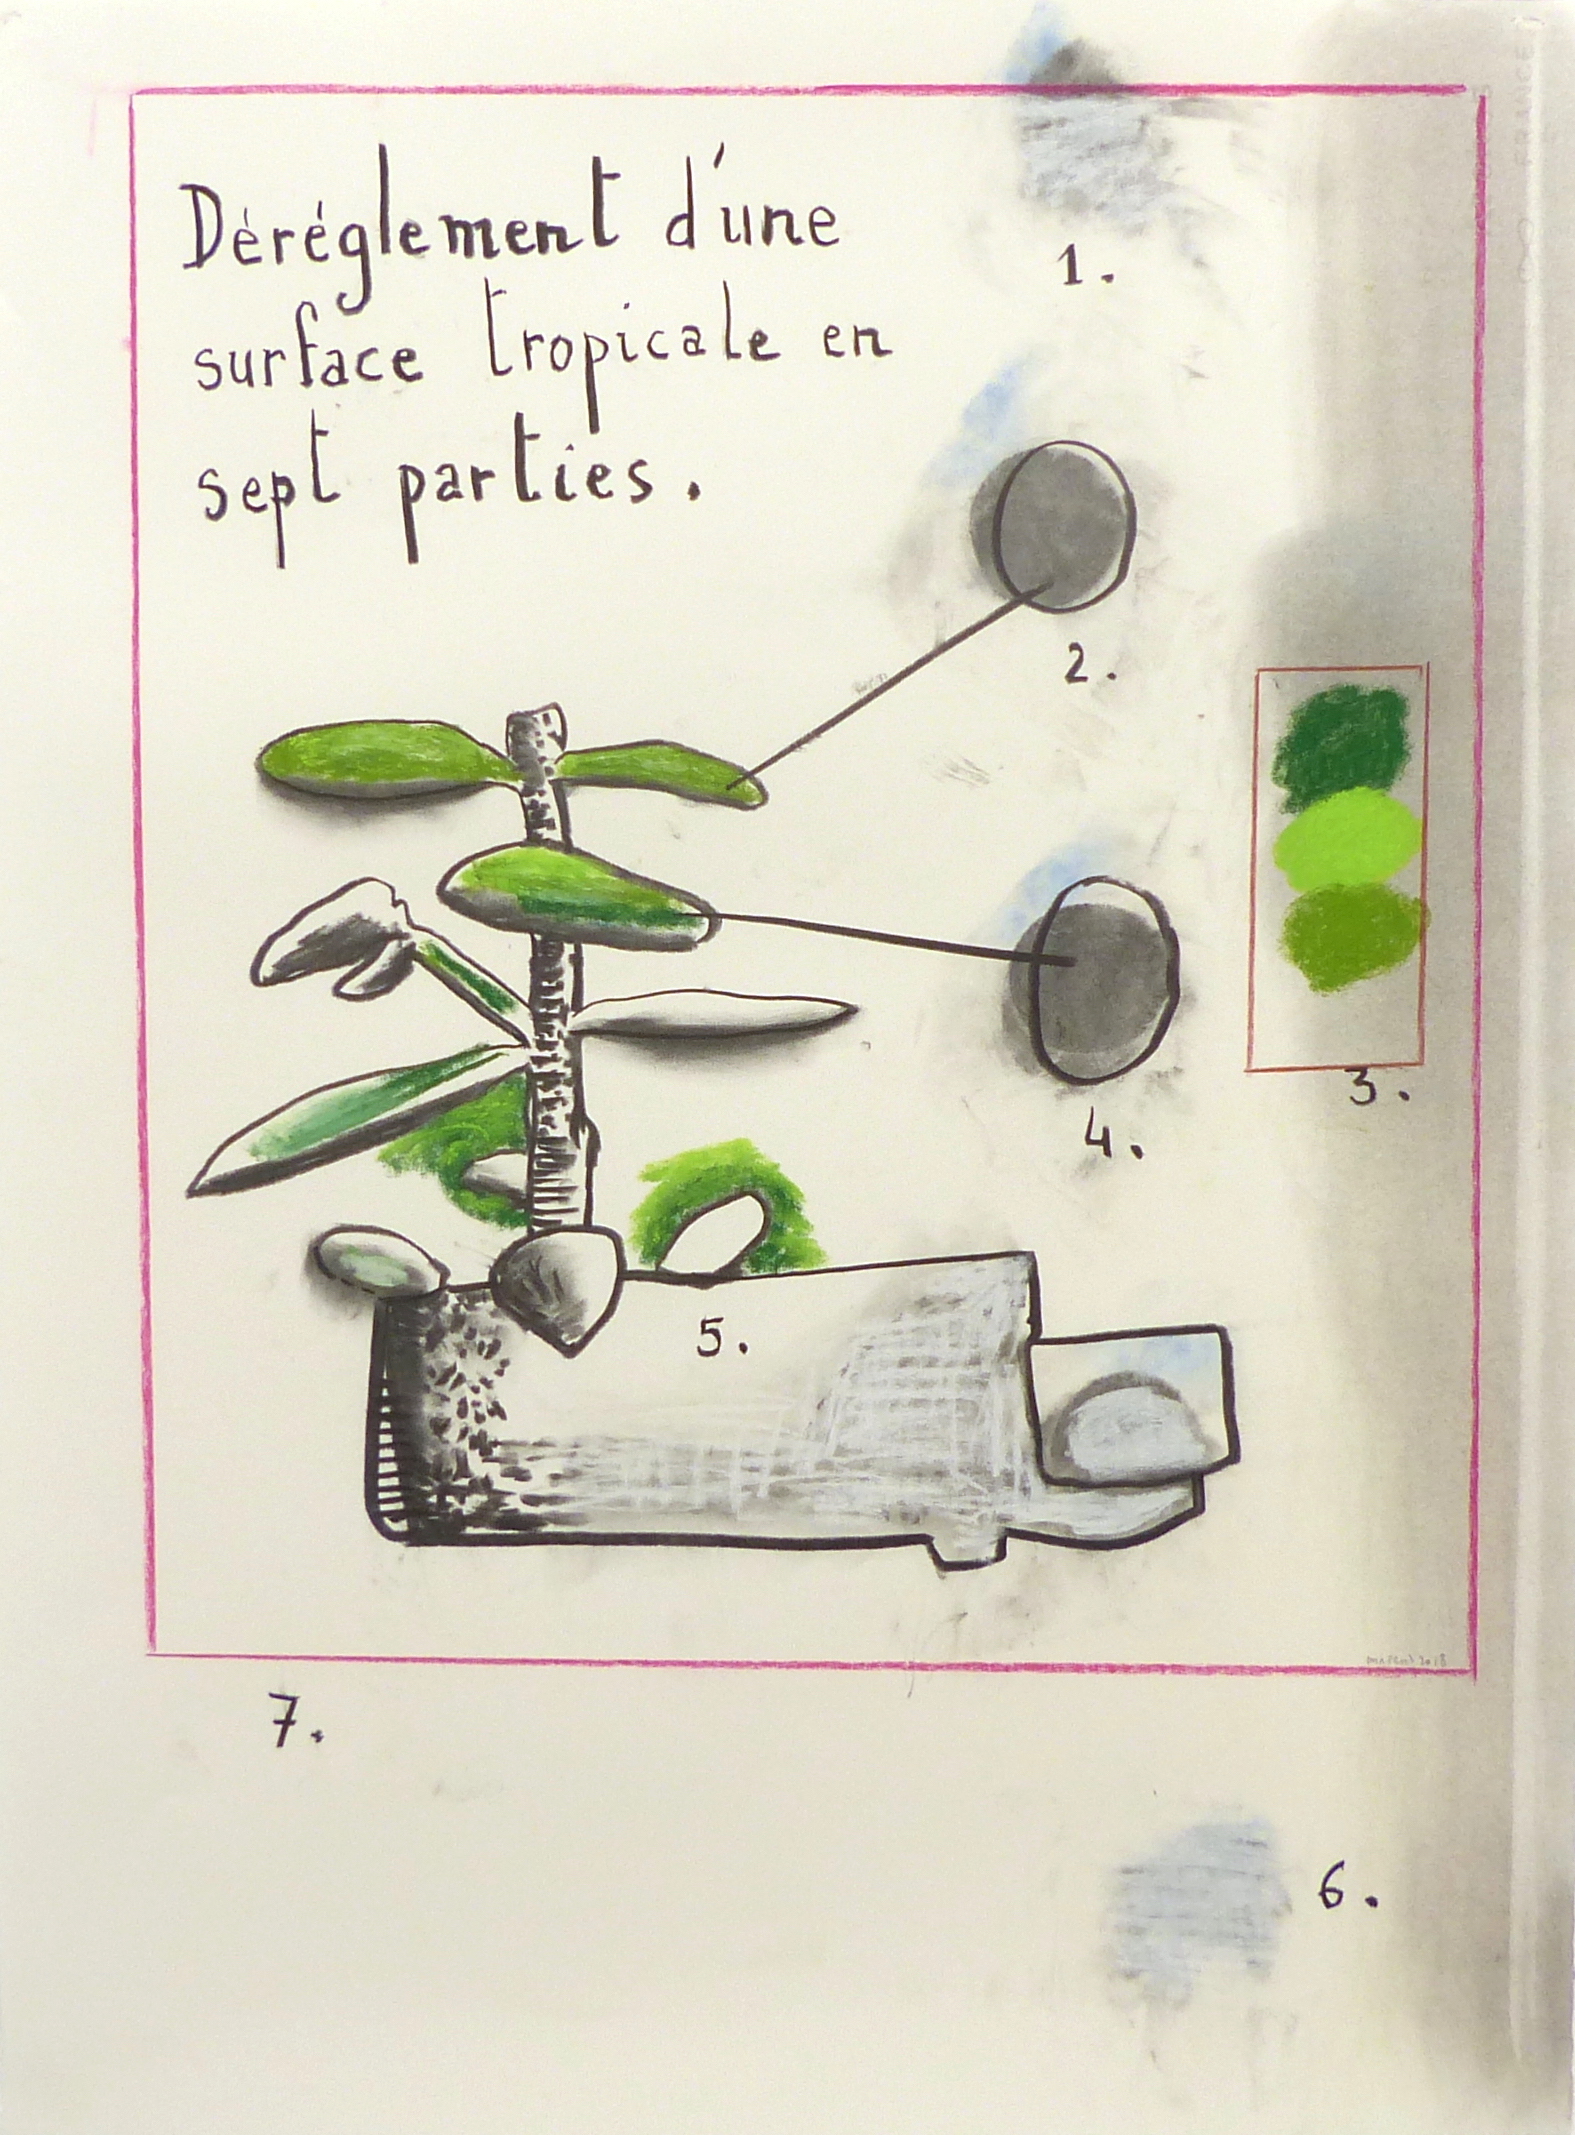 Déréglement d'une surface tropicale en sept parties - Technique mixte sur papier - 65 x 50 cm - 2018 - Collection particulière